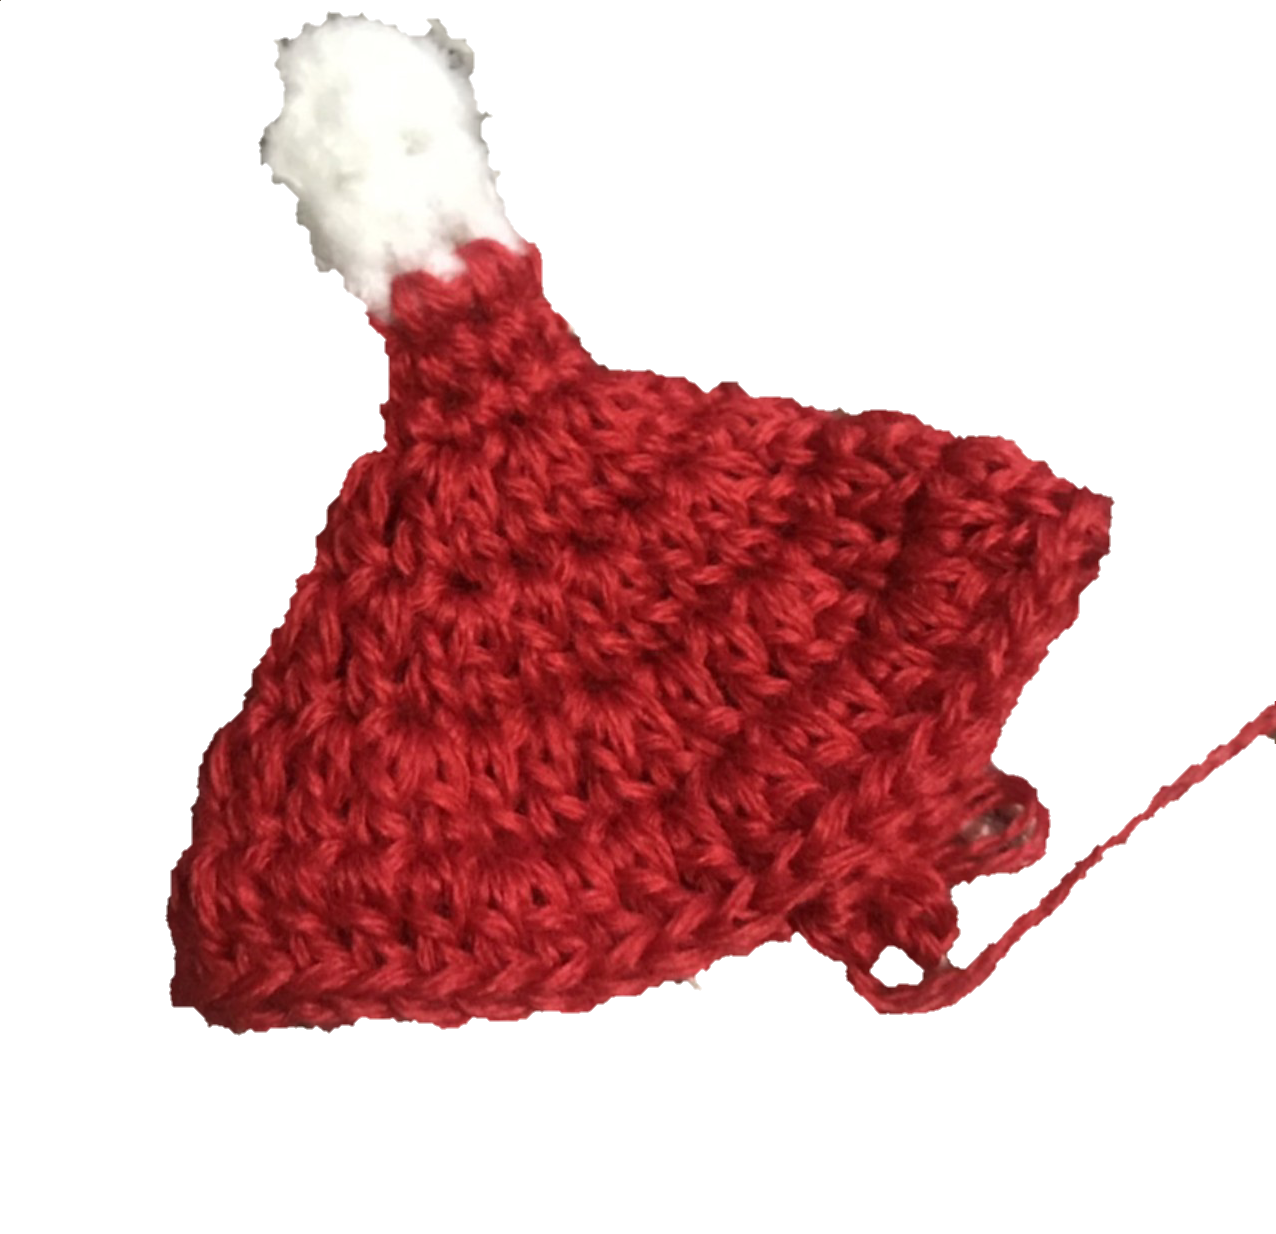 クリスマスまで まだ間に合います 編み物得意な方いらっしゃいませんか Yuami Shop